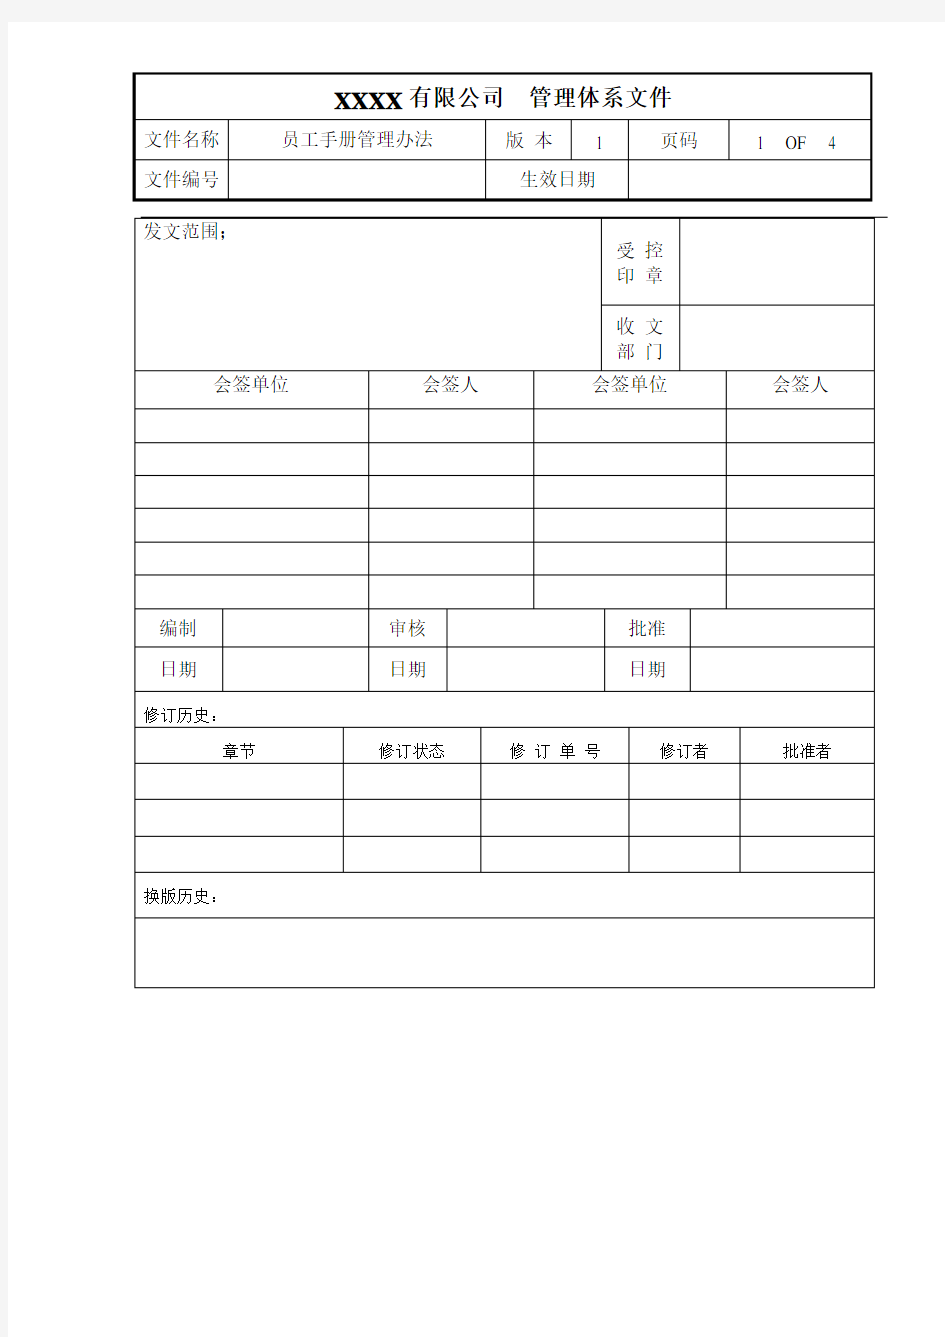 员工手册管理办法(1版)